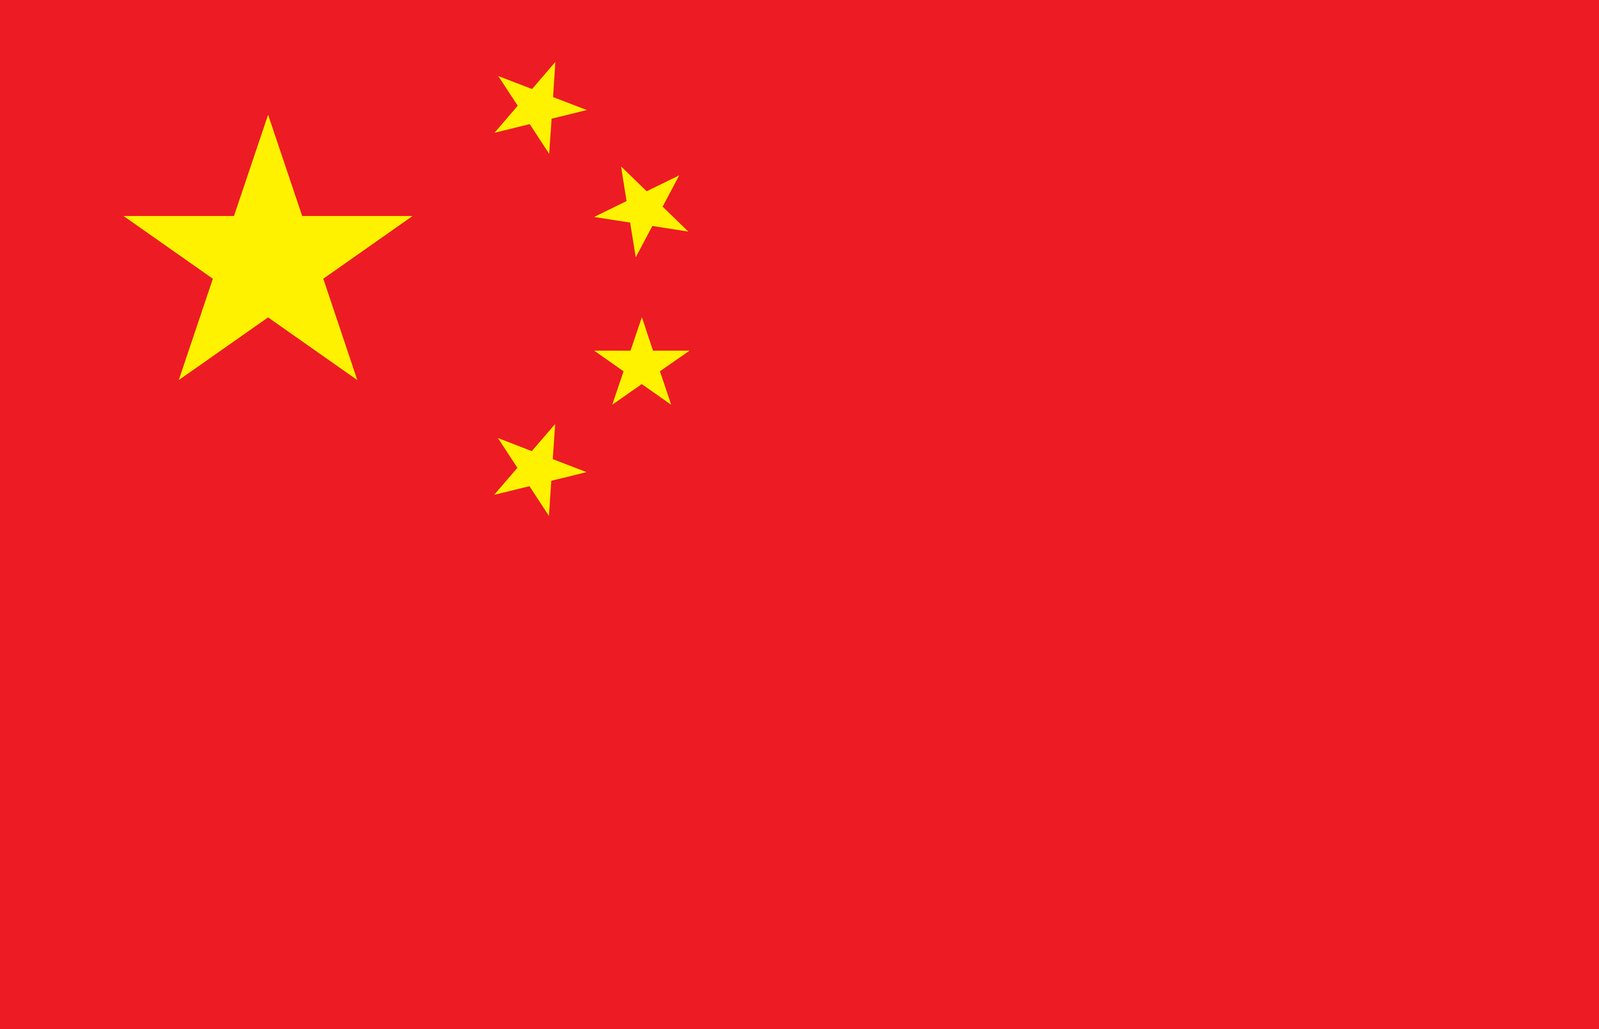 Descargar foto de la bandera de China gratis | Imágenes gratis